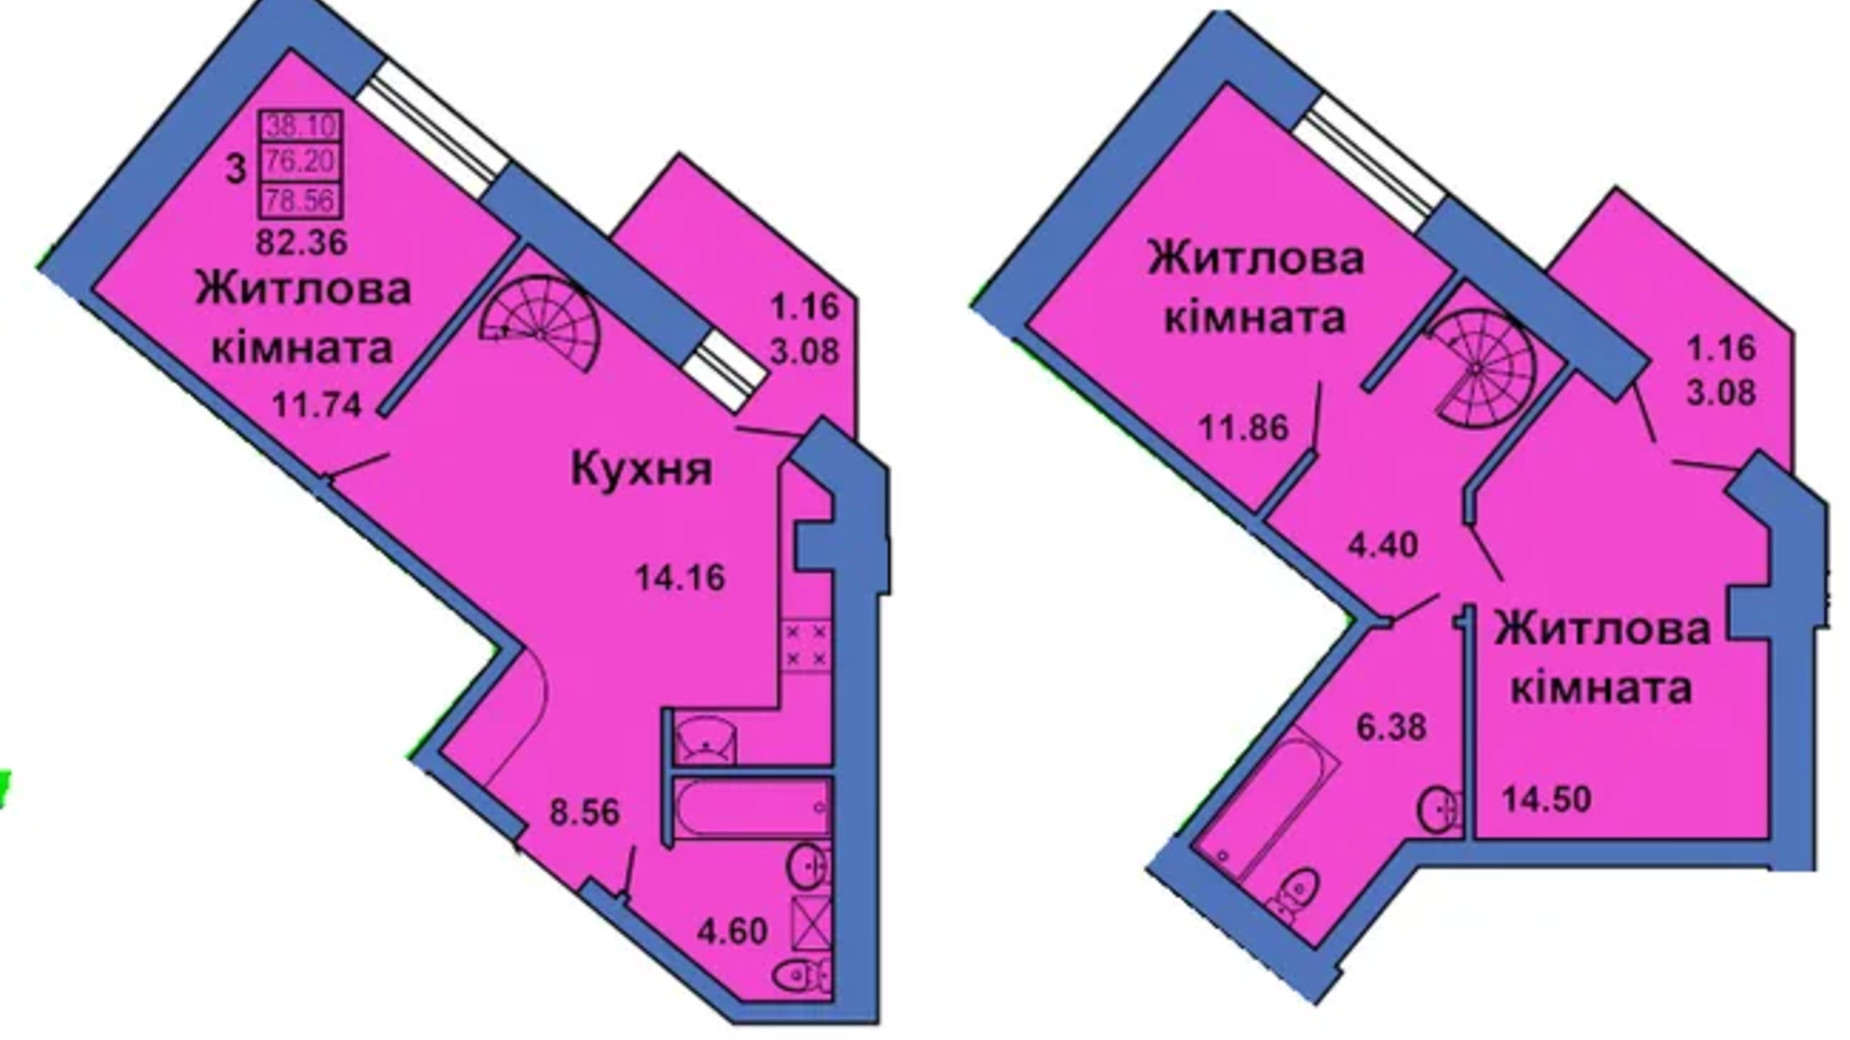 Планировка много­уровневой квартиры в ЖК ул. Весенняя, 9 82.36 м², фото 659621